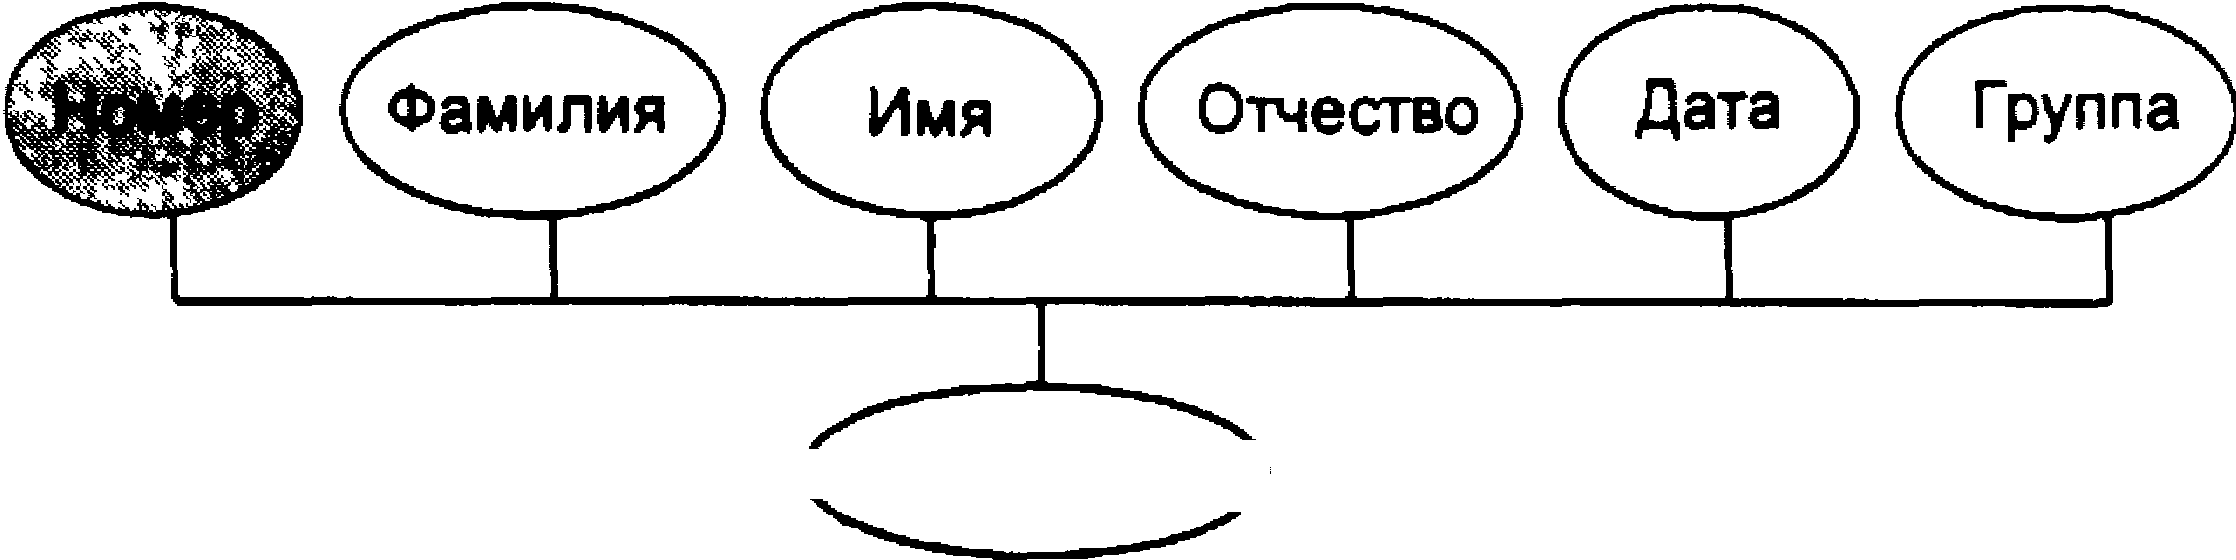 Понятие информационного объекта. Нормализация отношений. Реляционный подход к построению модели данных. Связь понятий «объект» и «модель».. Понятие информационных отношений таблица. Метод т групп